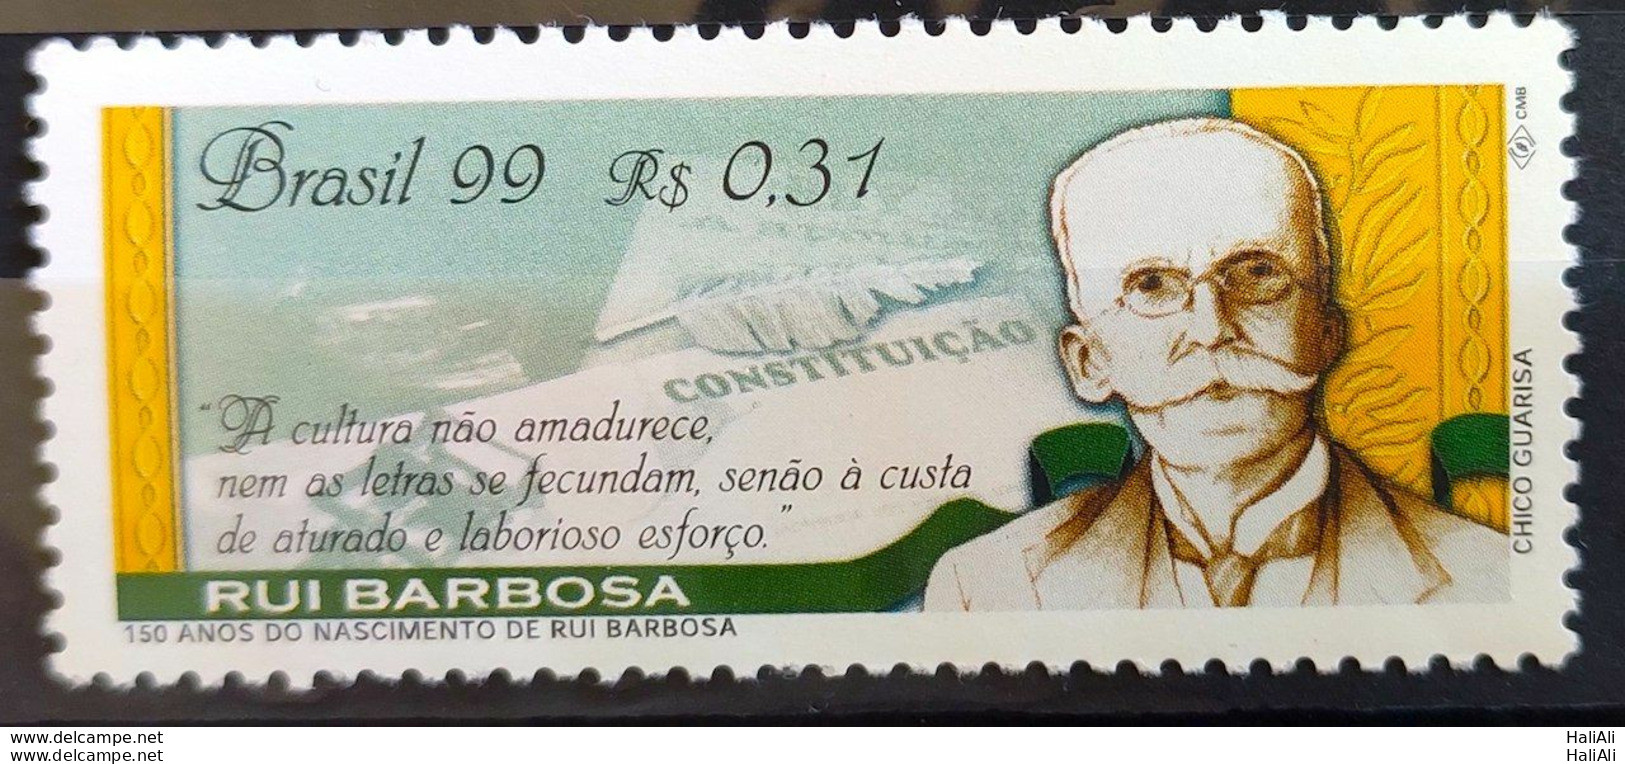 C 2211 Brazil Stamp Rui Barbosa Literature Politic 1999 - Unused Stamps